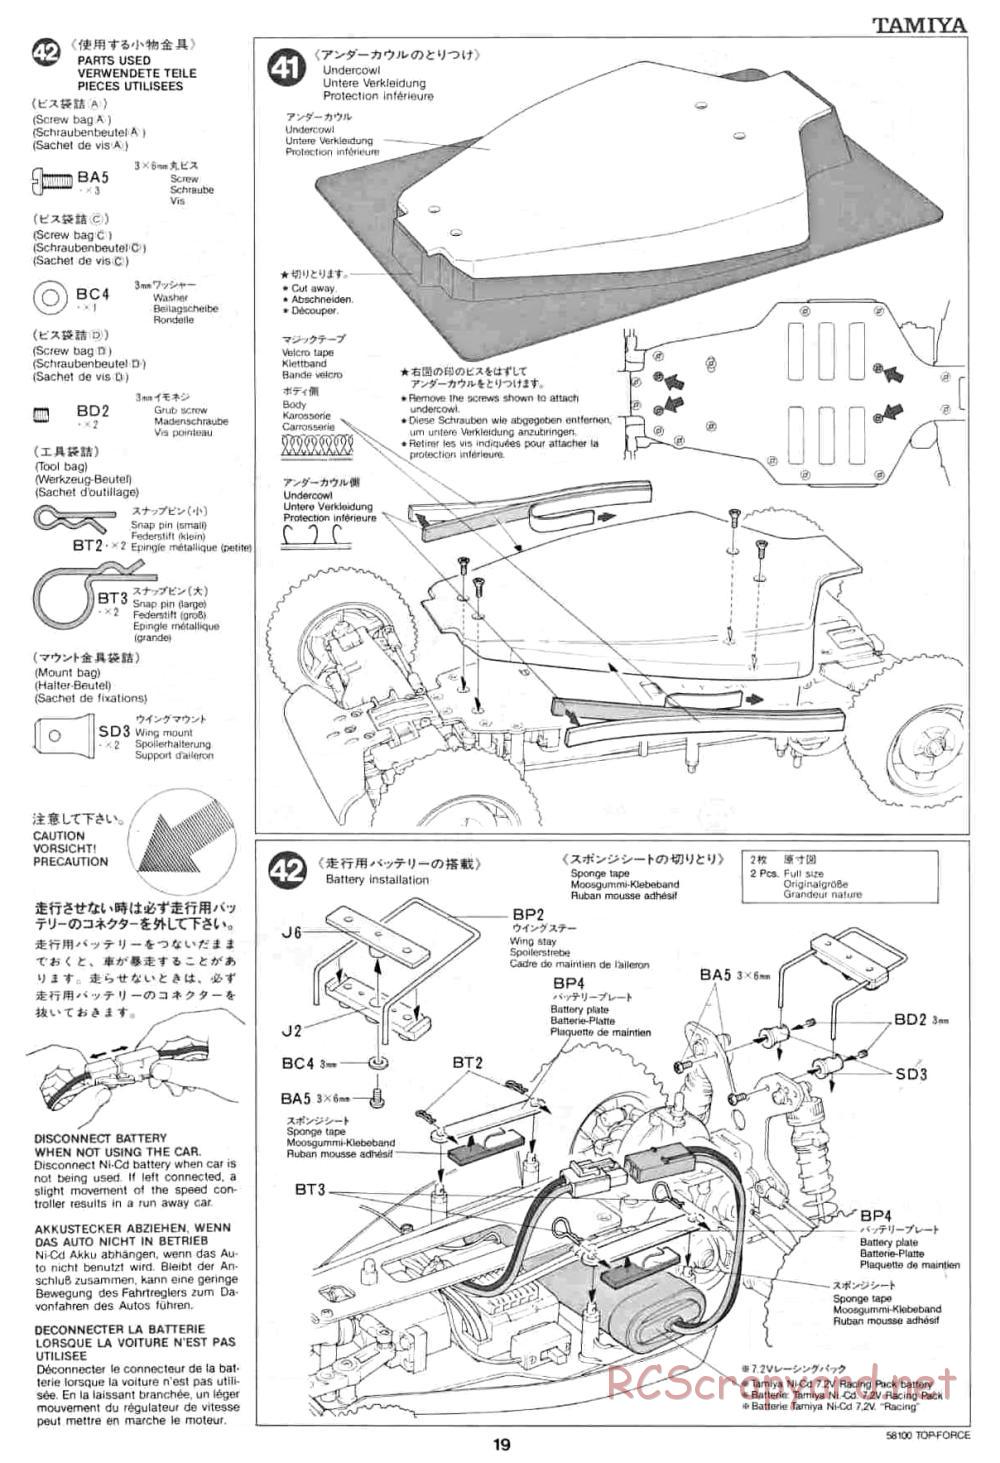 Tamiya - Top Force - 58100 - Manual - Page 19